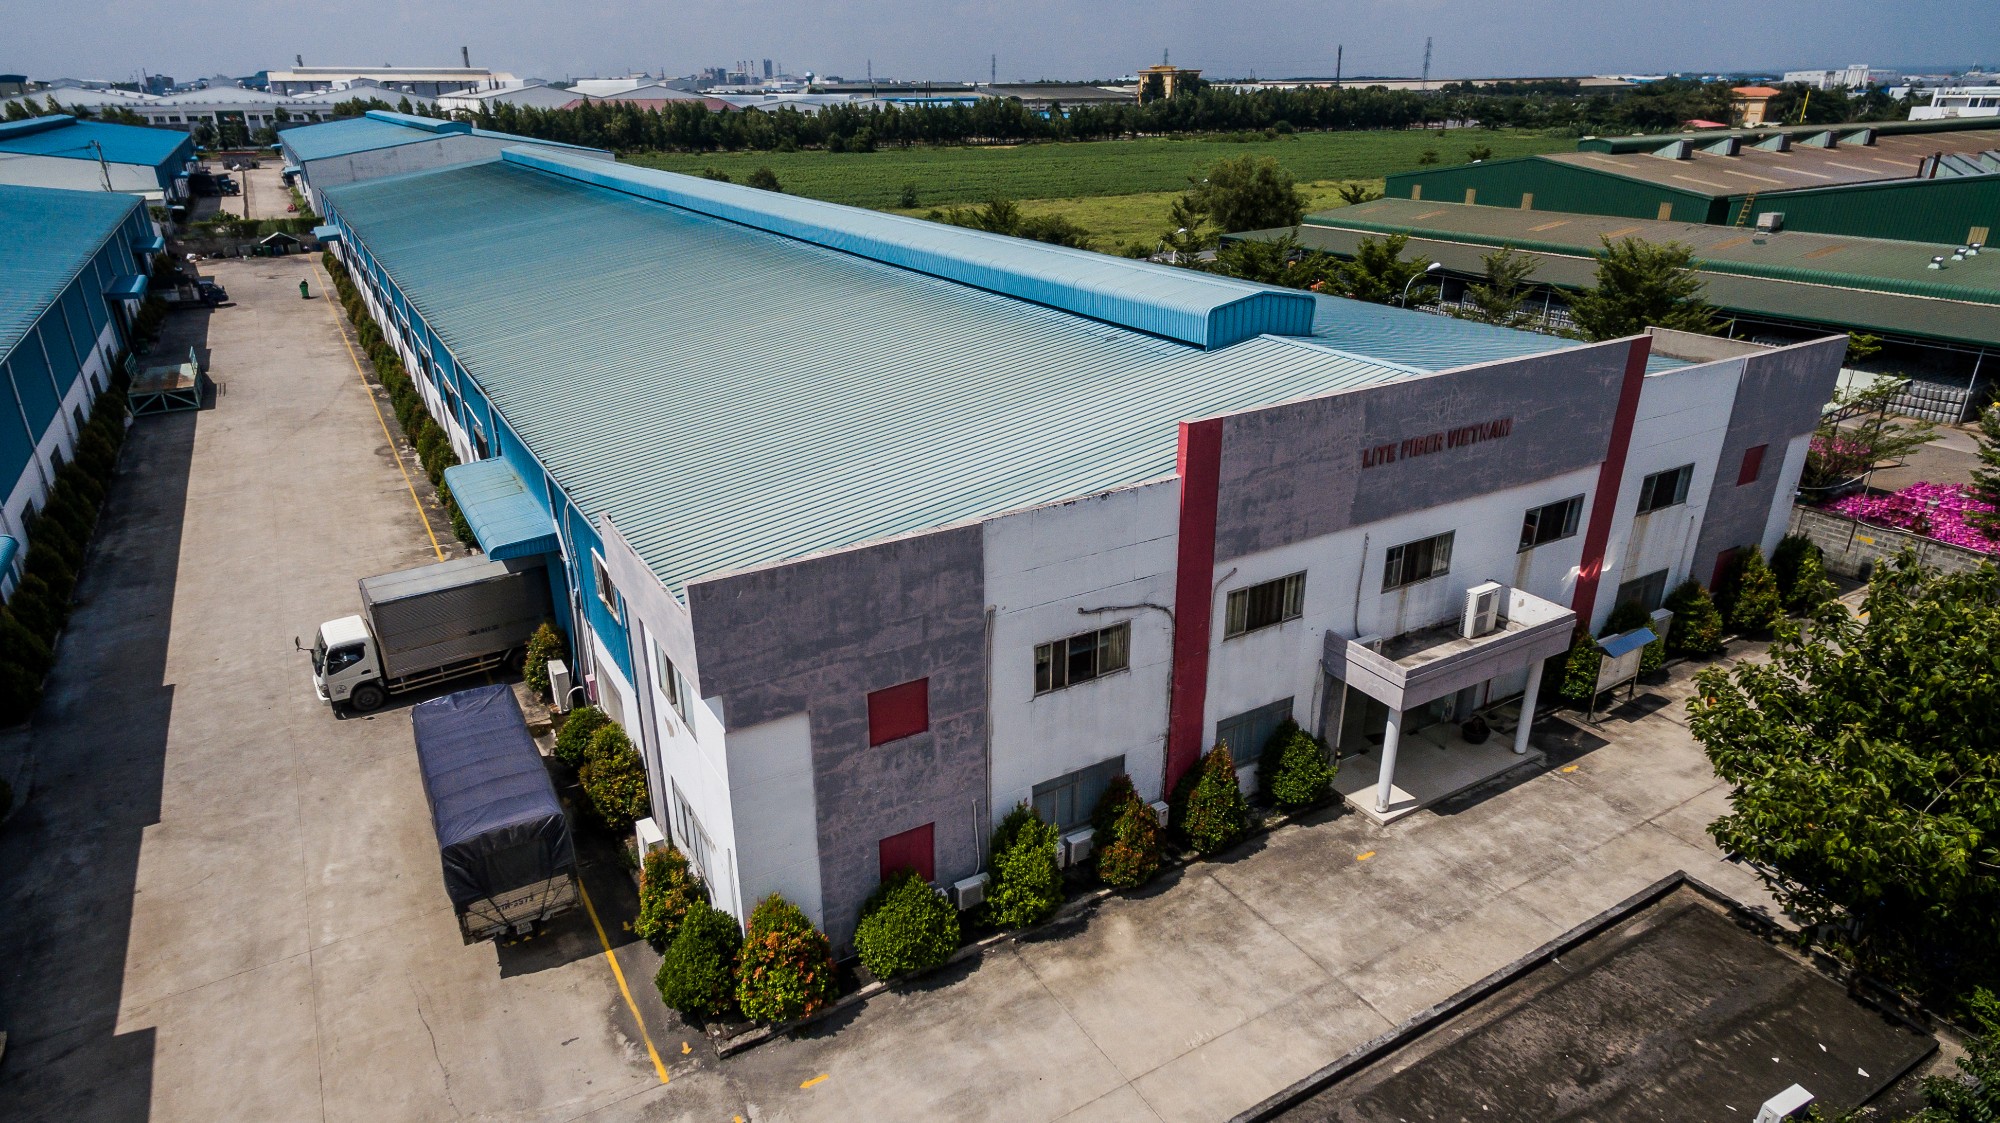 Cho thuê nhà xưởng trung tâm công nghiệp dệt may Nhơn Trạch, huyện Nhơn Trạch, tỉnh Đồng Nai.